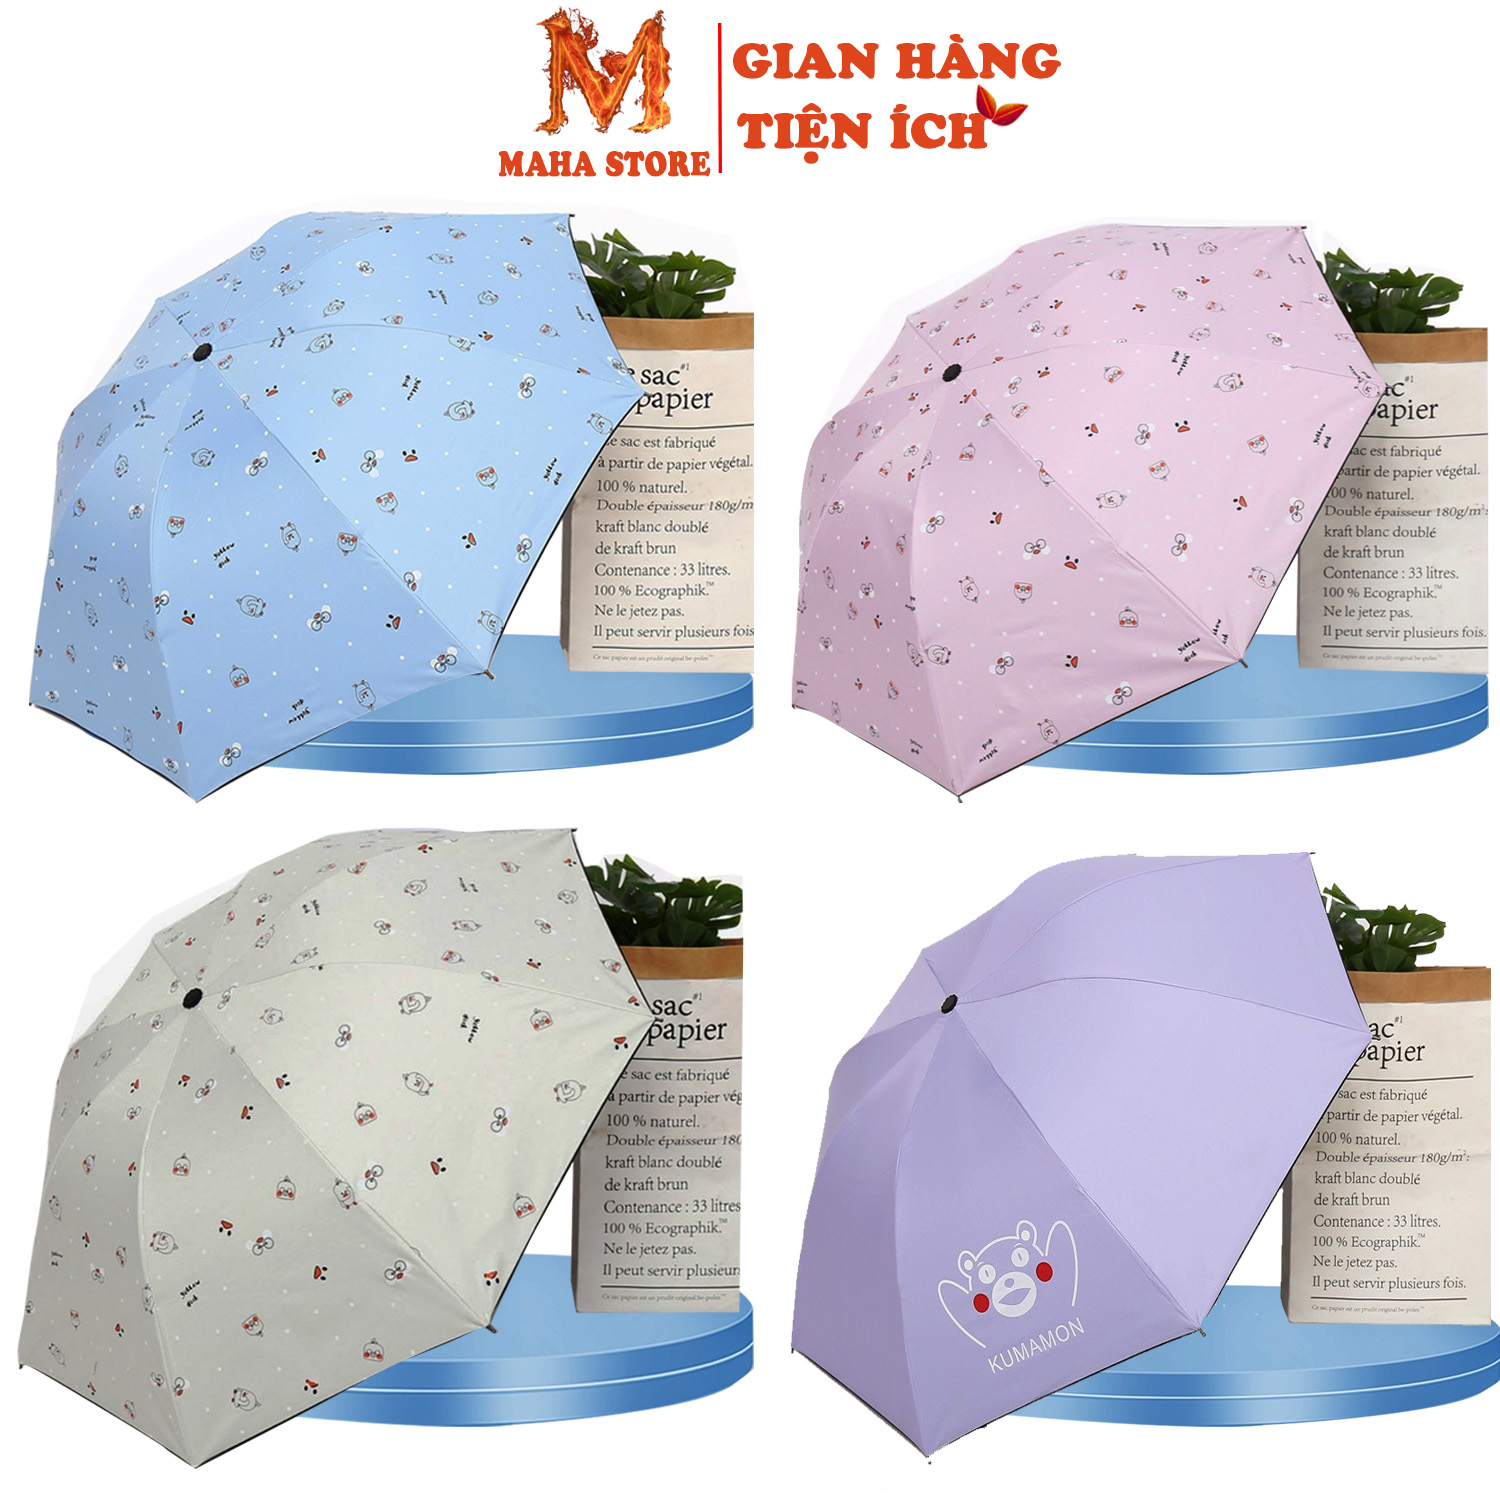 Bạn muốn xem một chiếc ô che mưa nhỏ xinh và dễ thương? Đây chính là sản phẩm mà bạn đang tìm kiếm. Với thiết kế đáng yêu, chiếc ô này sẽ khiến bạn thích thú khi sử dụng trong các ngày mưa.